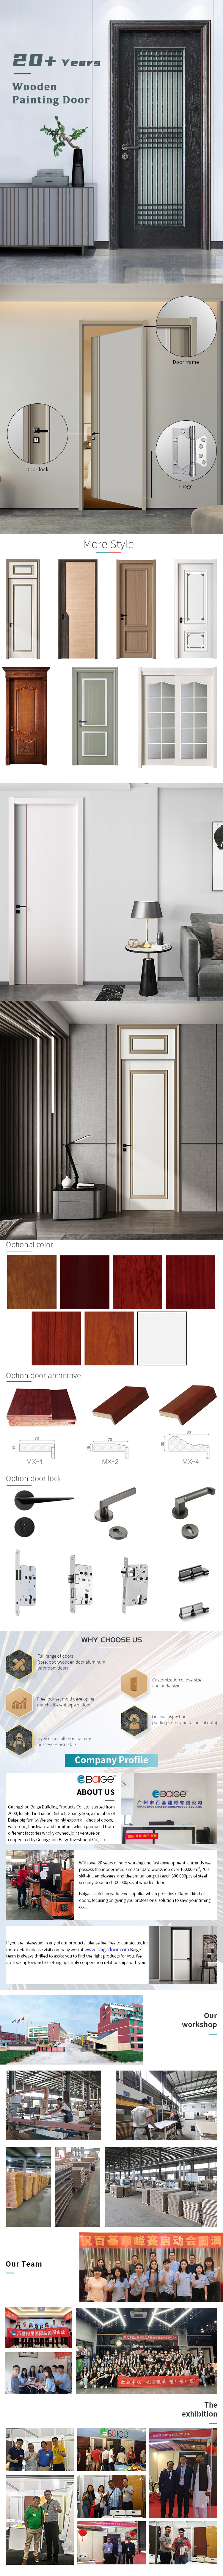 Modern Interior Room Solid Wooden Doors for Bedrooms Office Wooden Door Designs